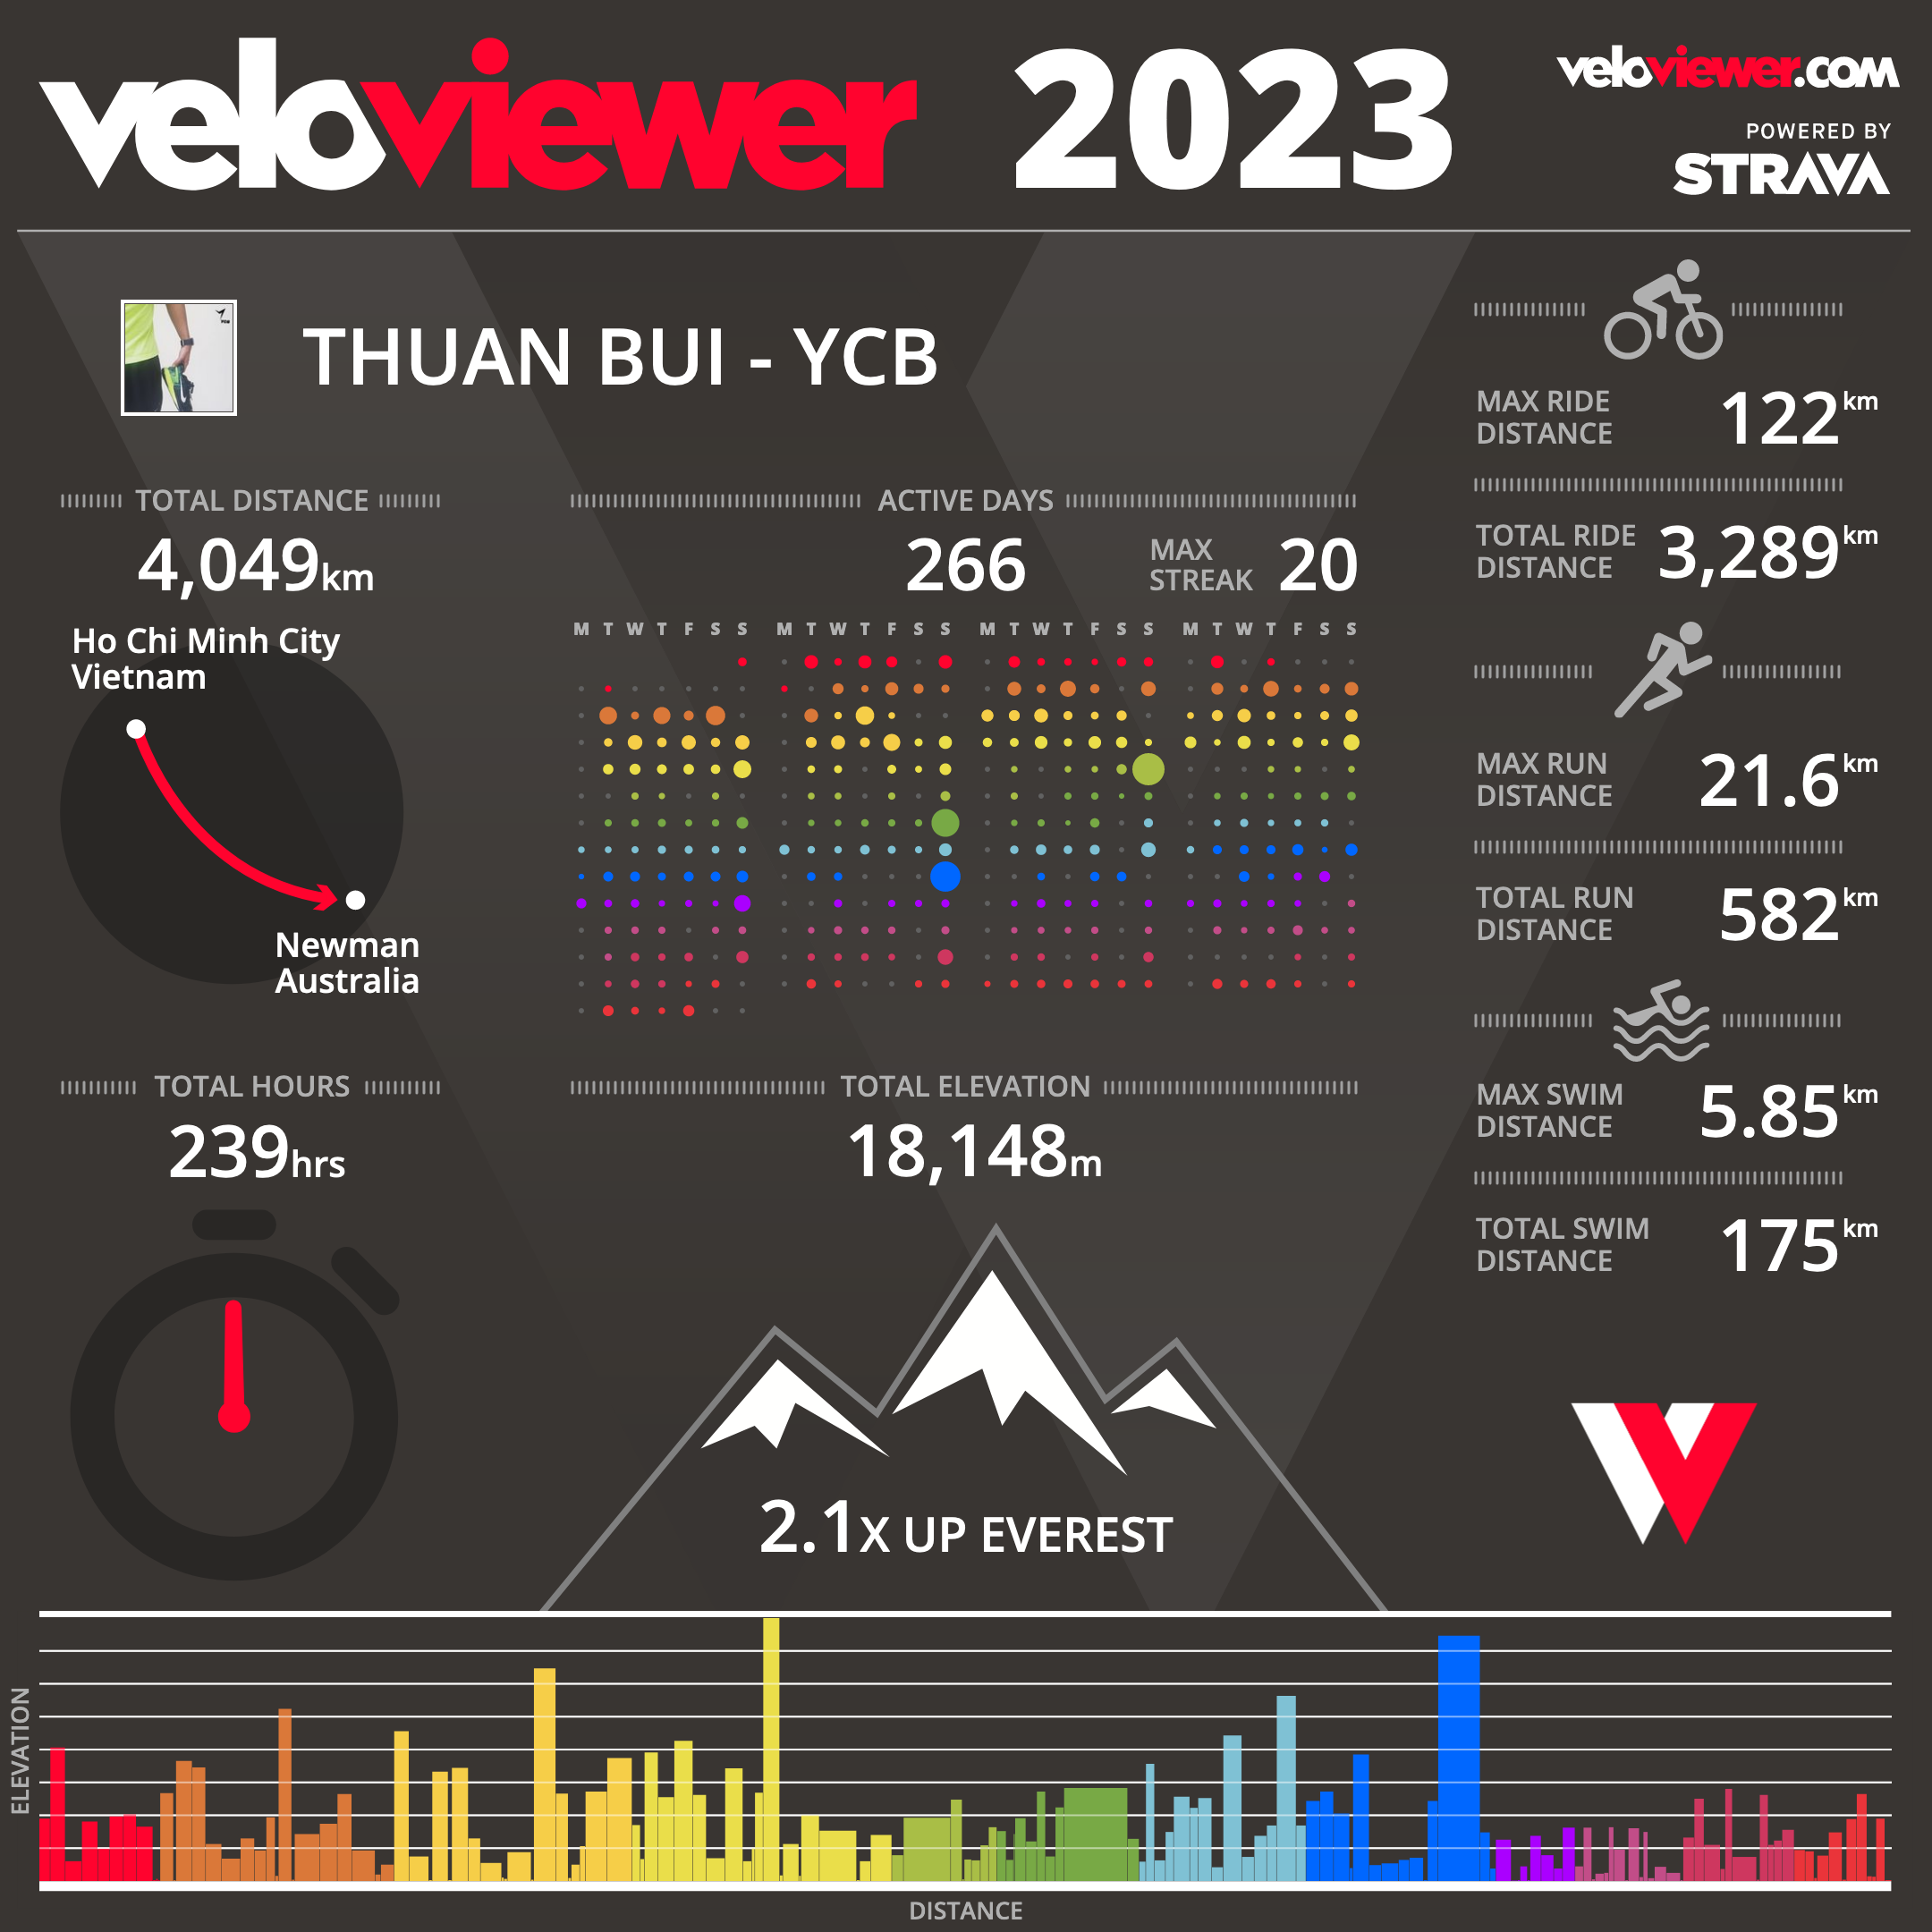 Tổng kết hoạt động năm 2023 - Năm của những trải nghiệm mới - tong ket nam 2023 veloviewer